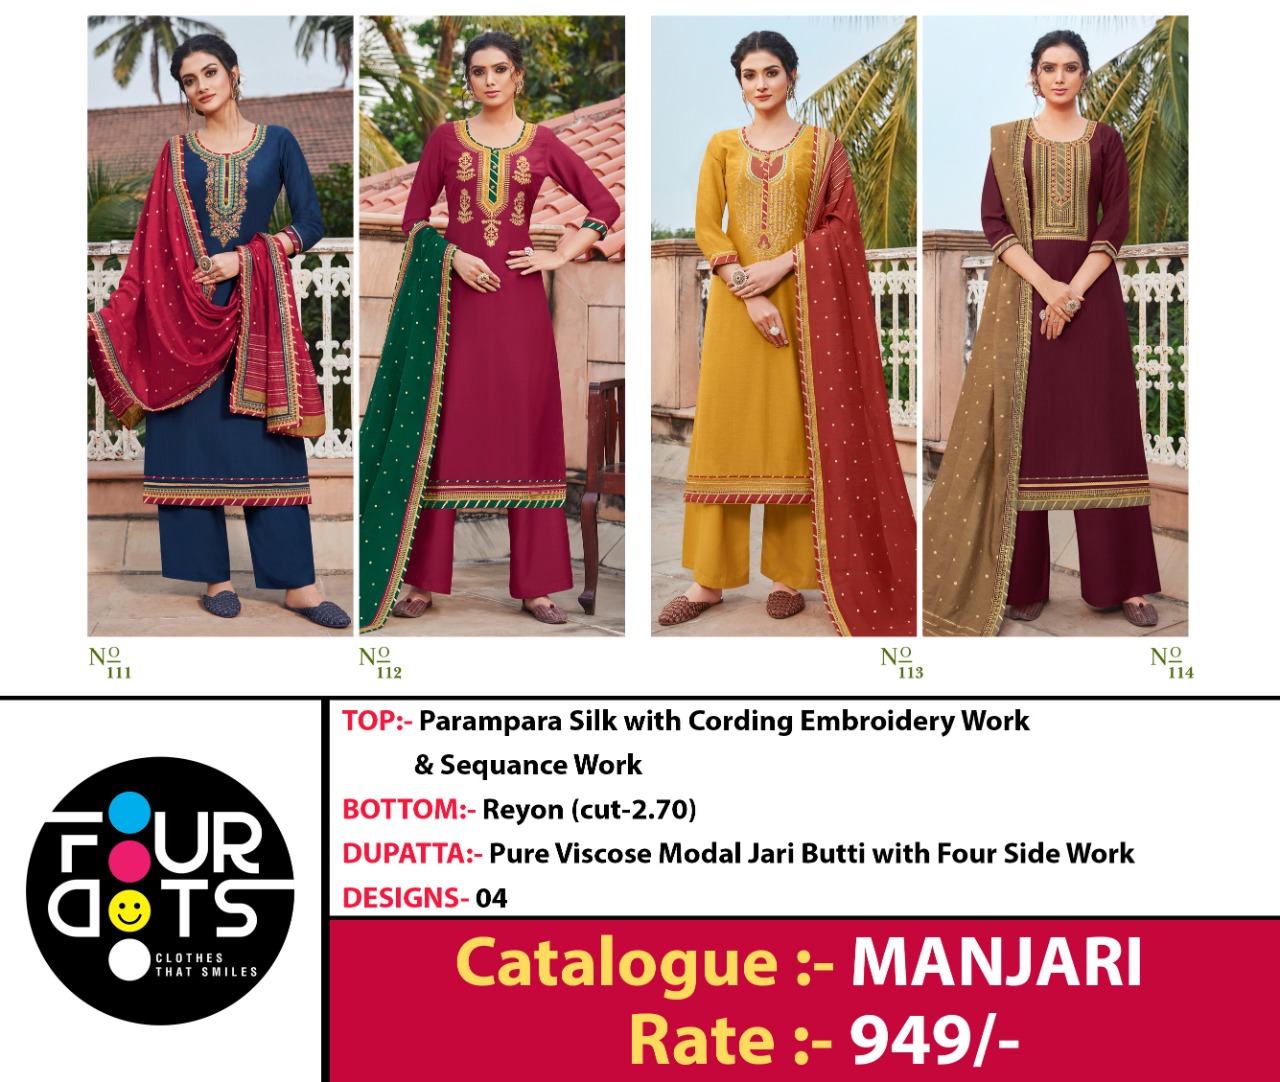 Four Dots Presents Manjari Parampara Silk Cording Embroidery Work Salwar Suit Wholesaler